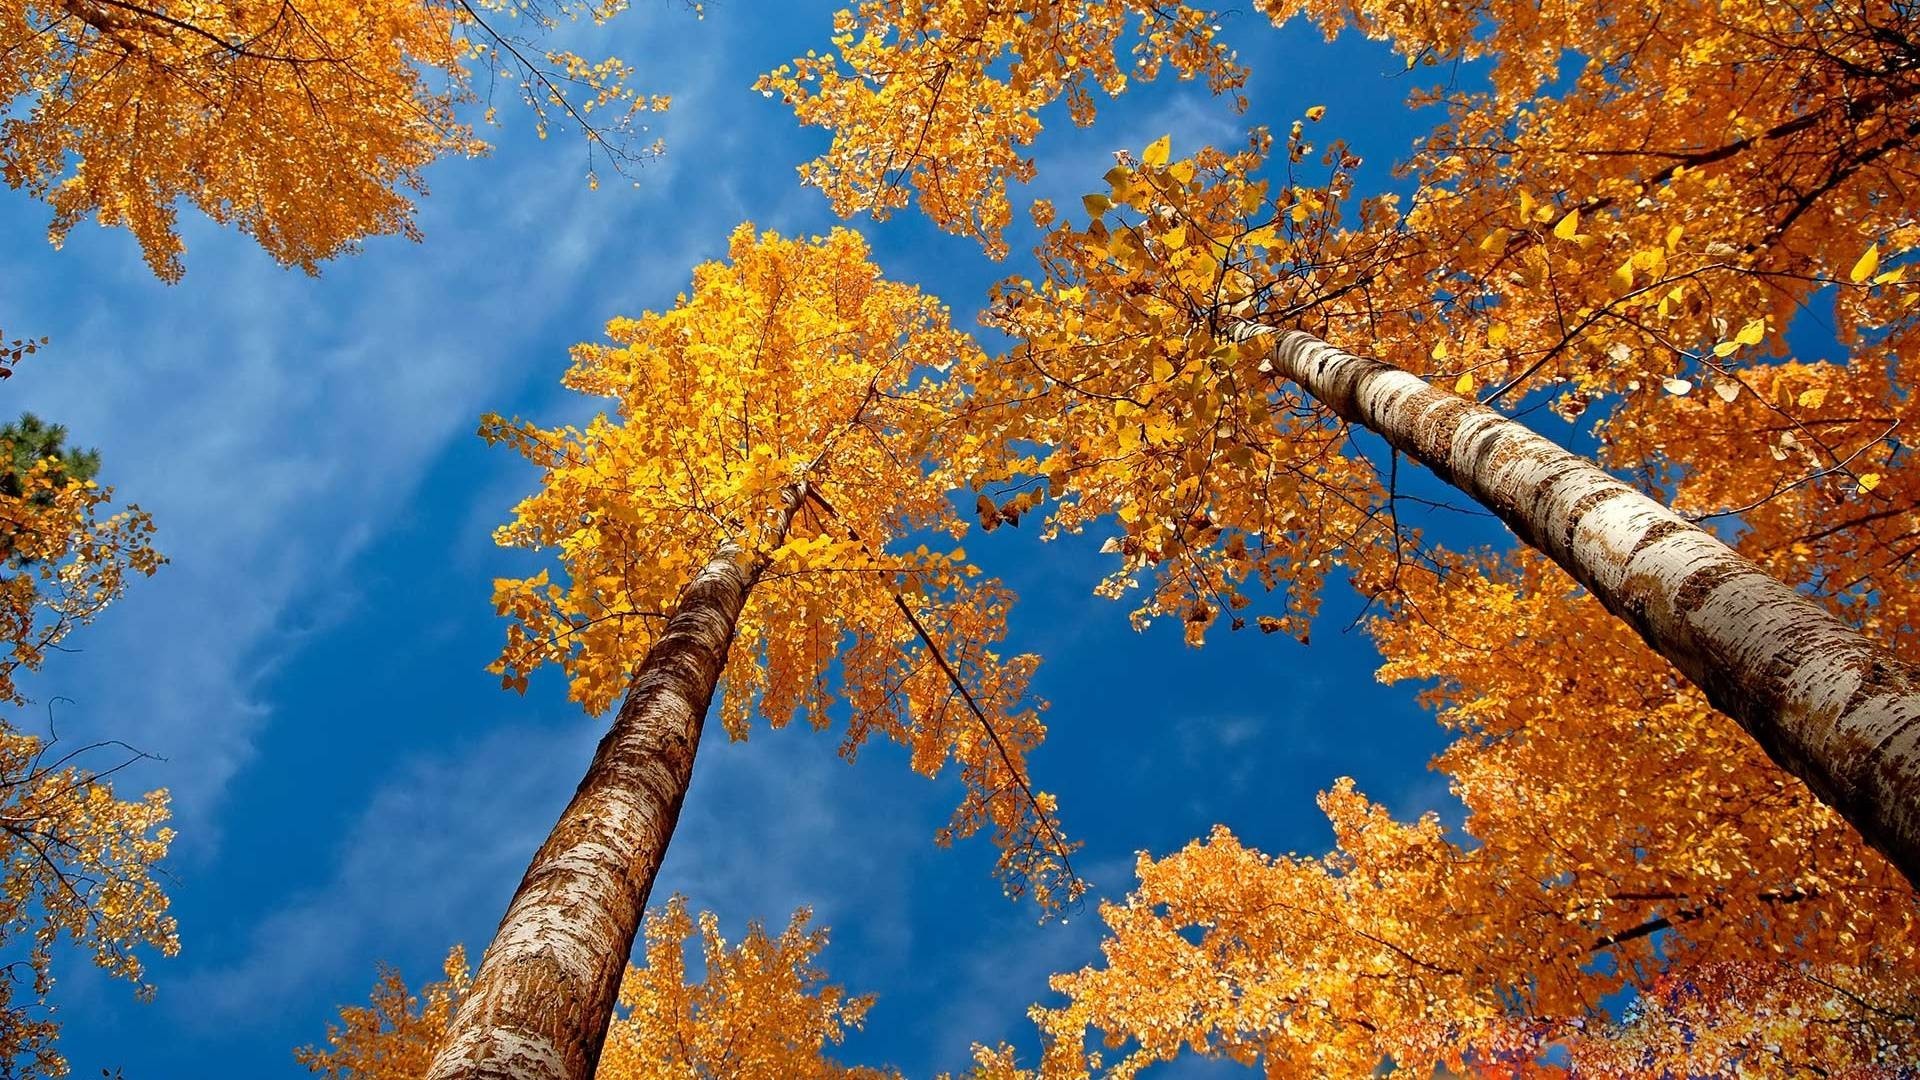 Autumn Desktop Wallpapers, Wallpaper, Autumn Desktop - Fall Desktop Backgrounds - HD Wallpaper 